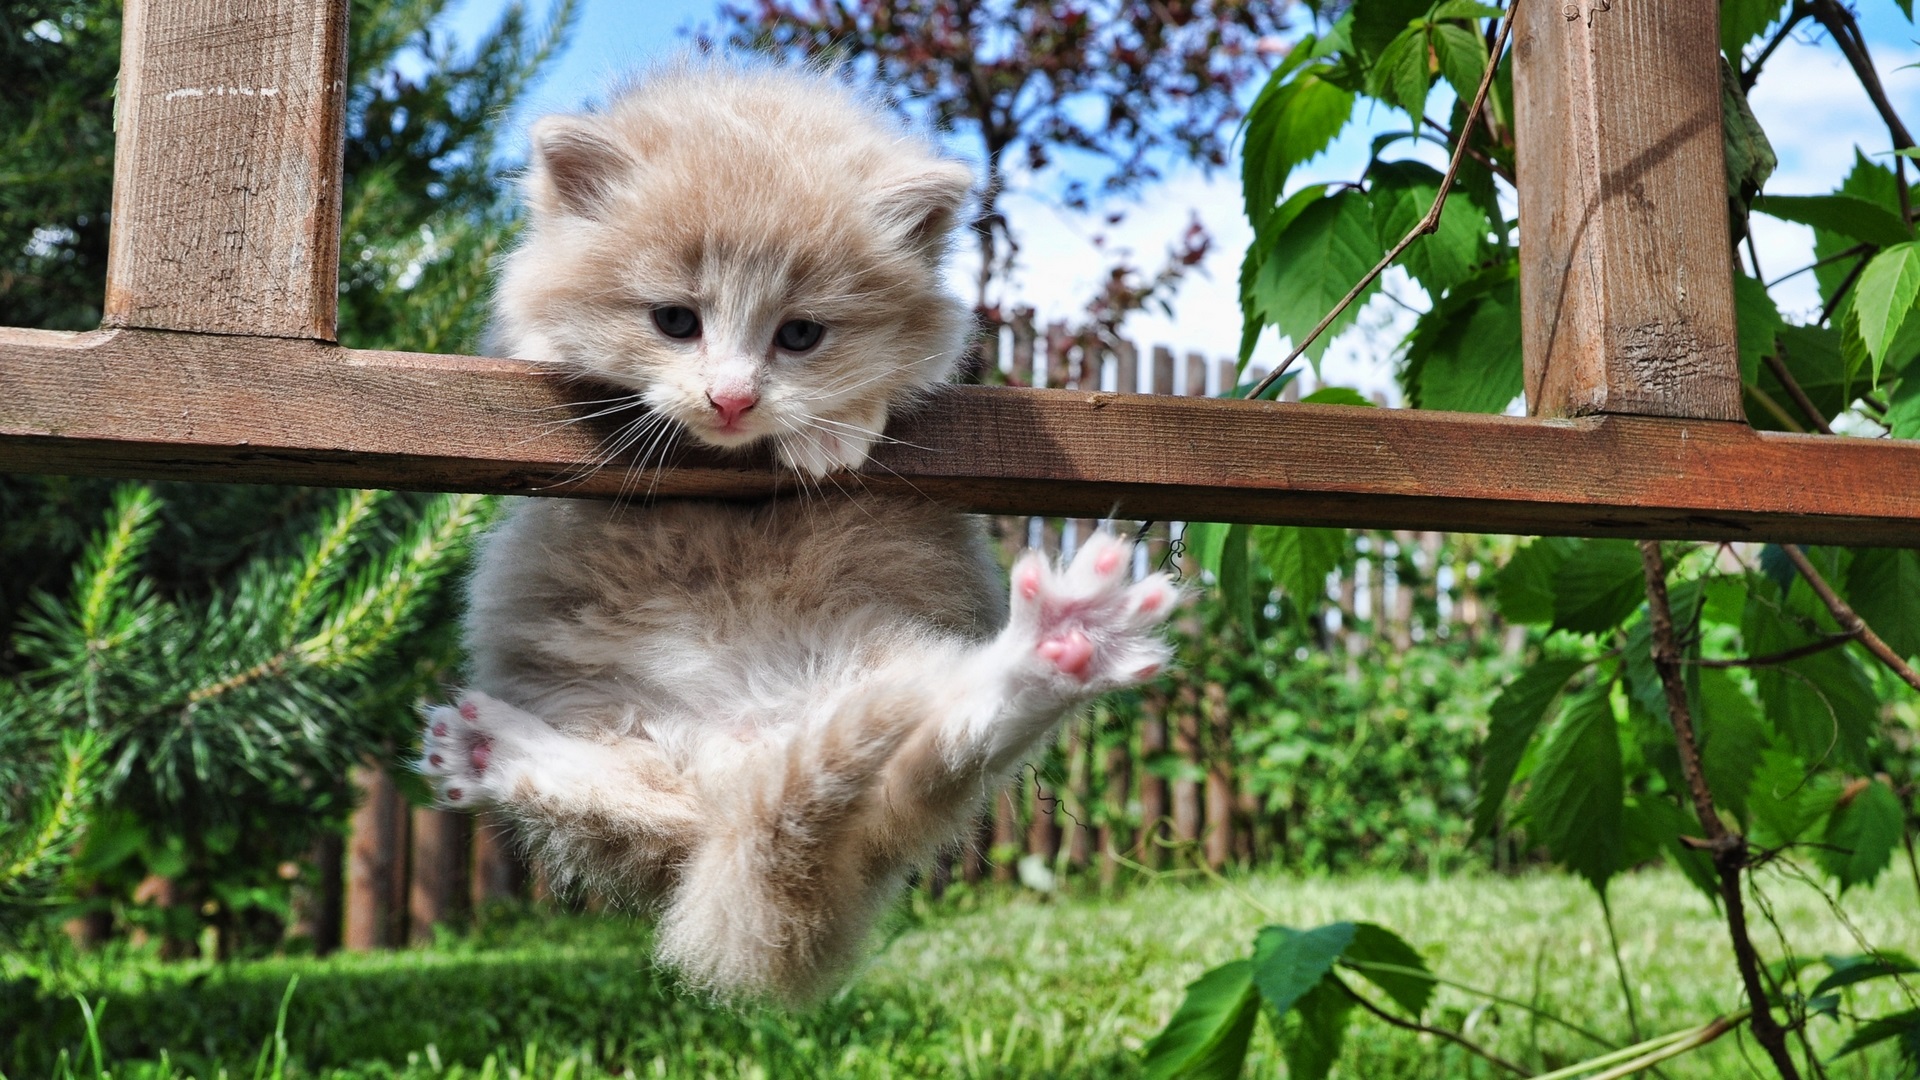 عکس گوگولی و بامزه برای استوری از بچه گربه ی کیوتچه